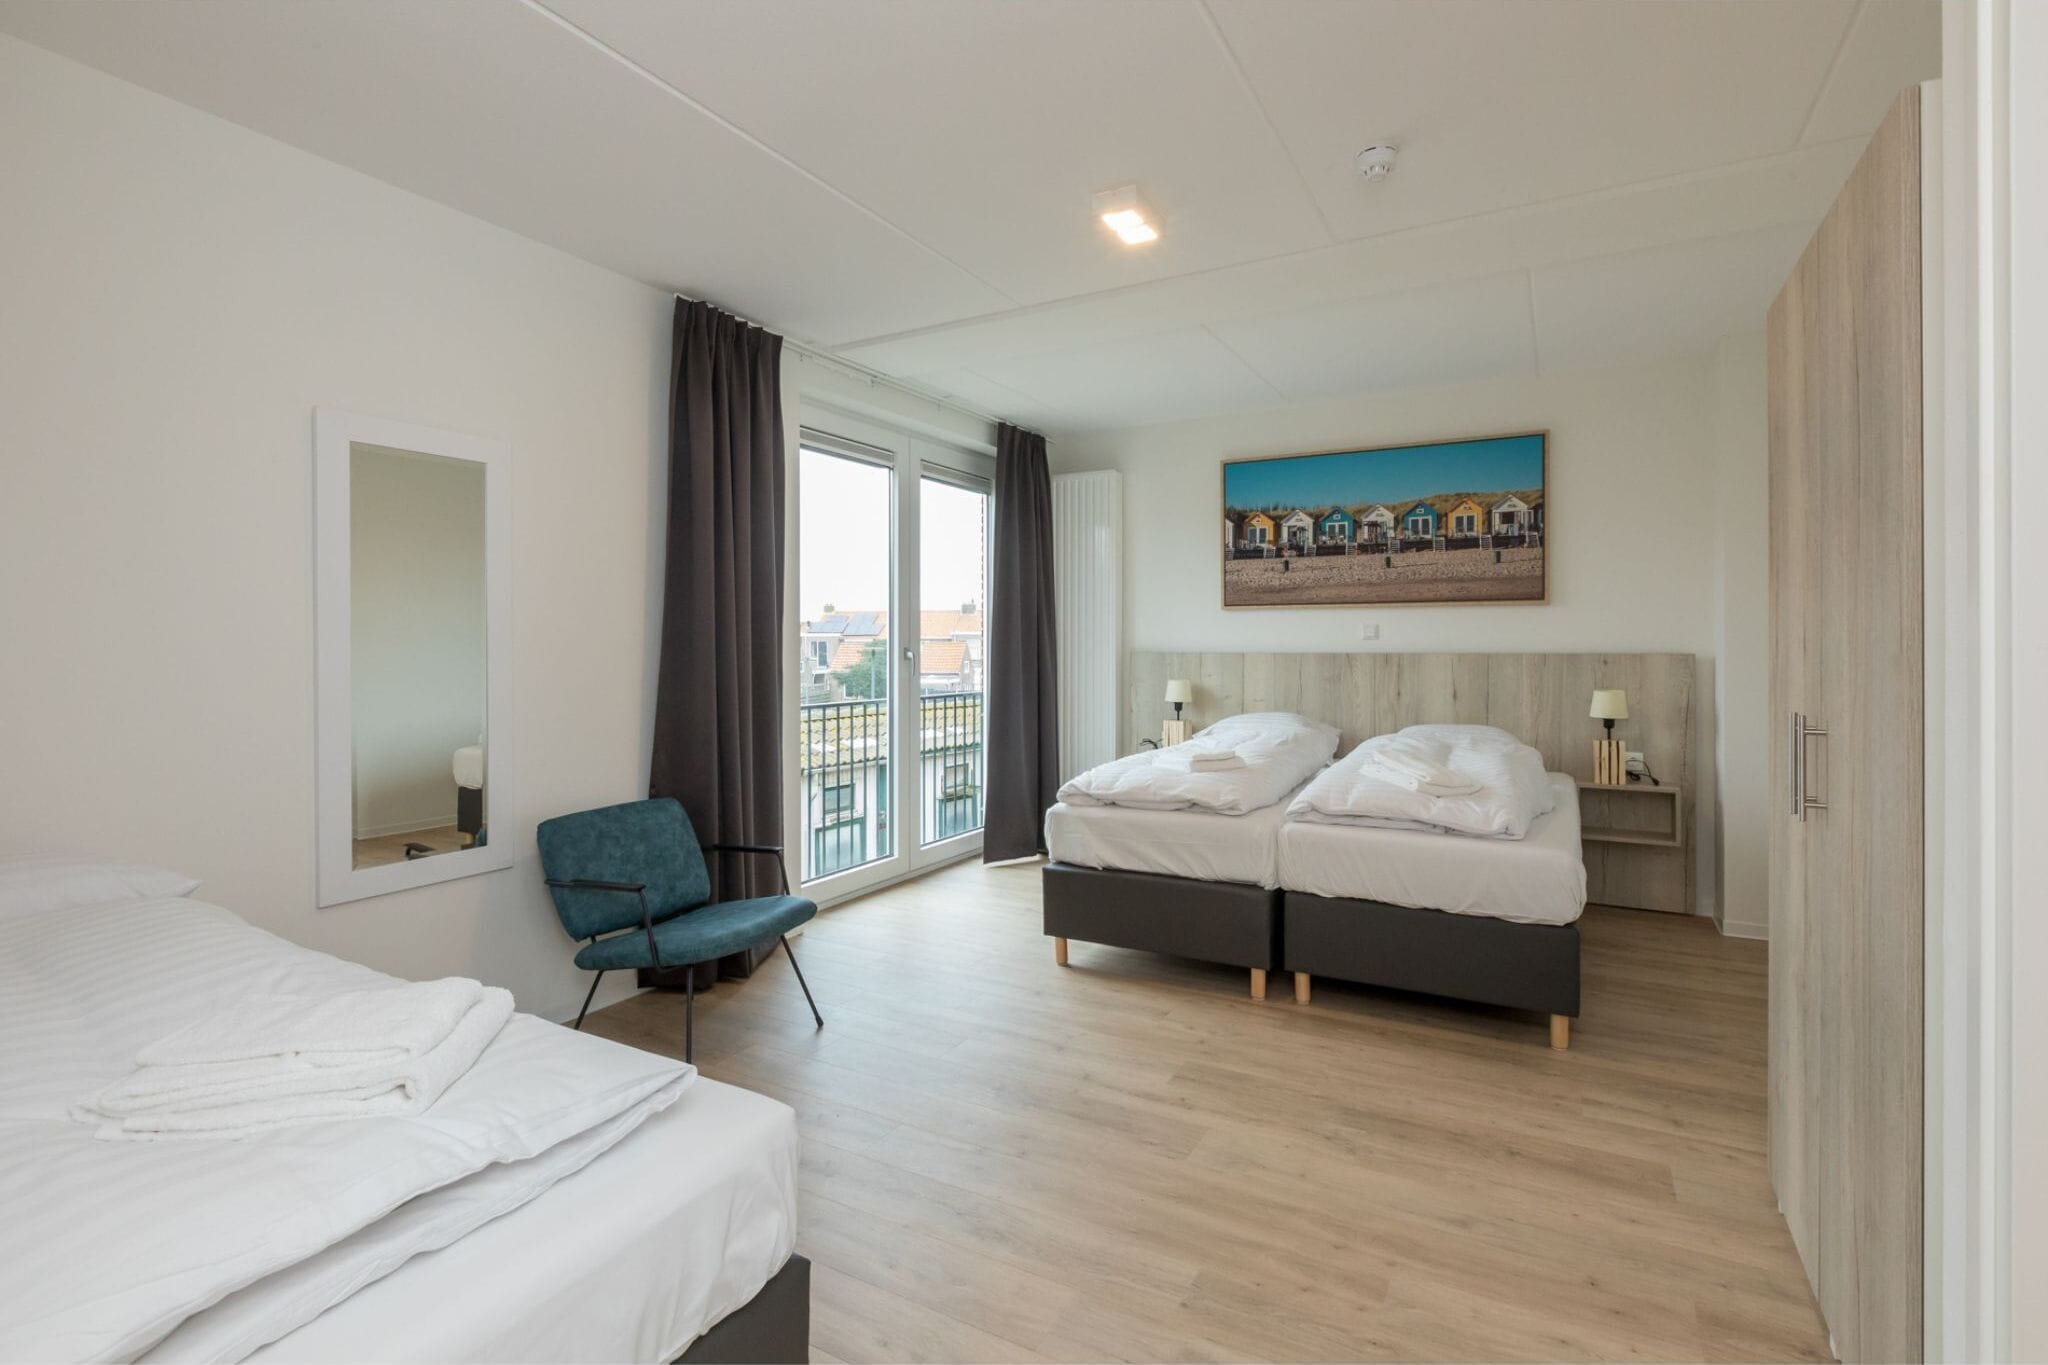 Luxury apartment in Zoutelande